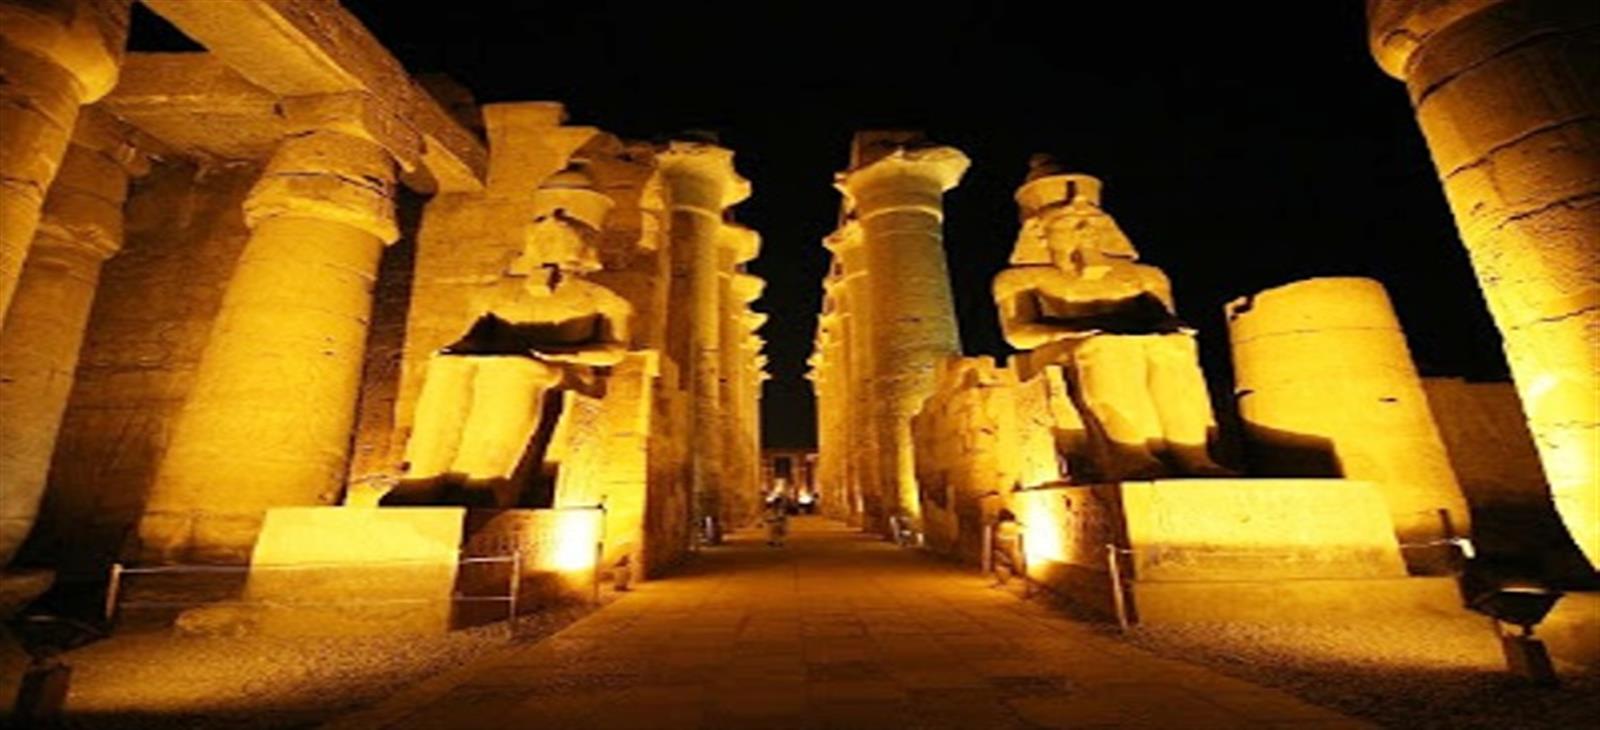 sound and light show luxor egypt